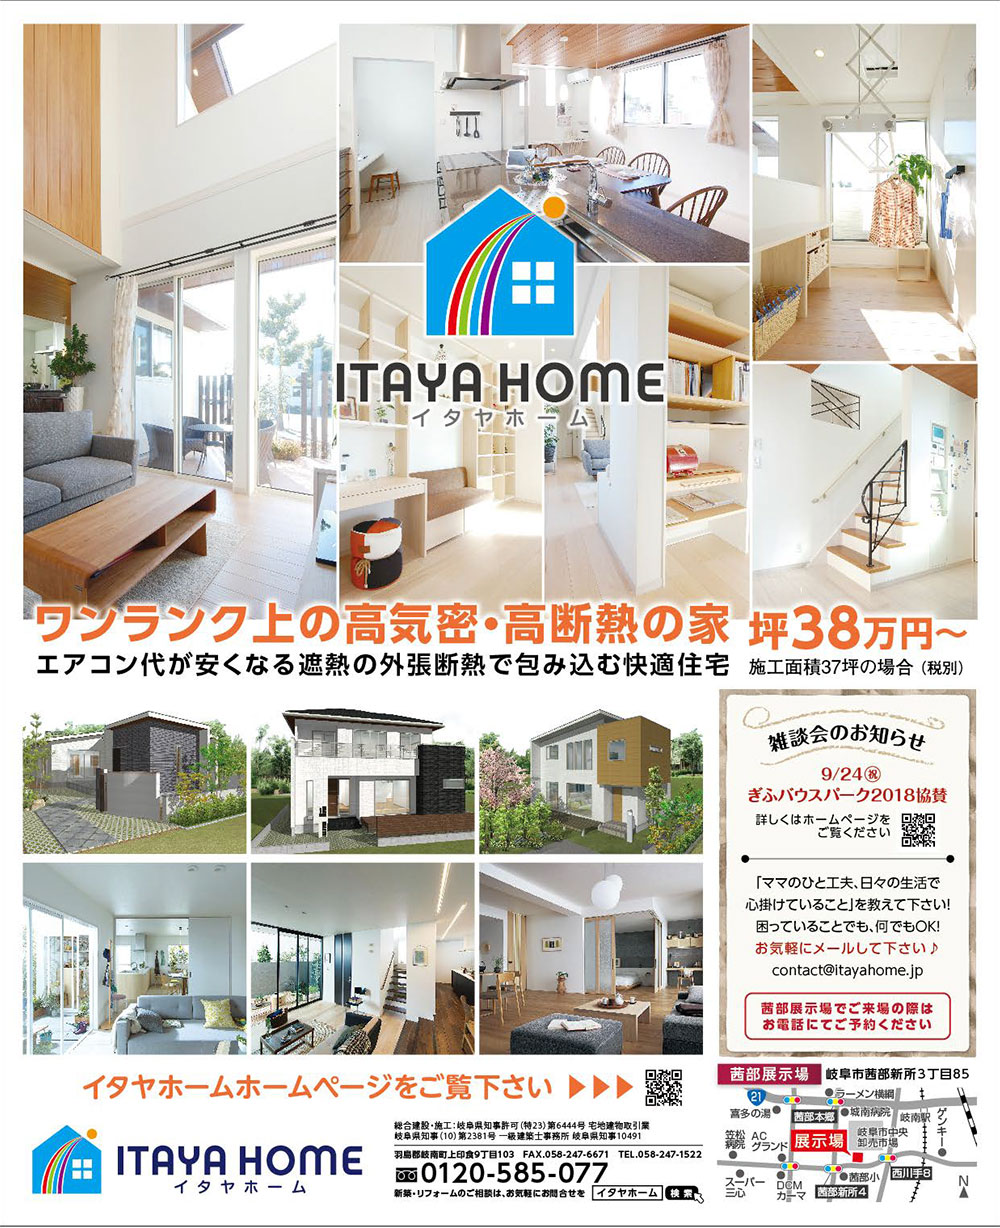 岐阜イタヤホームの注文住宅展示場イベント広告9月20日発行版。高気密高断熱の家　遮熱の外張断熱で包み込む「いごごちの良い家」